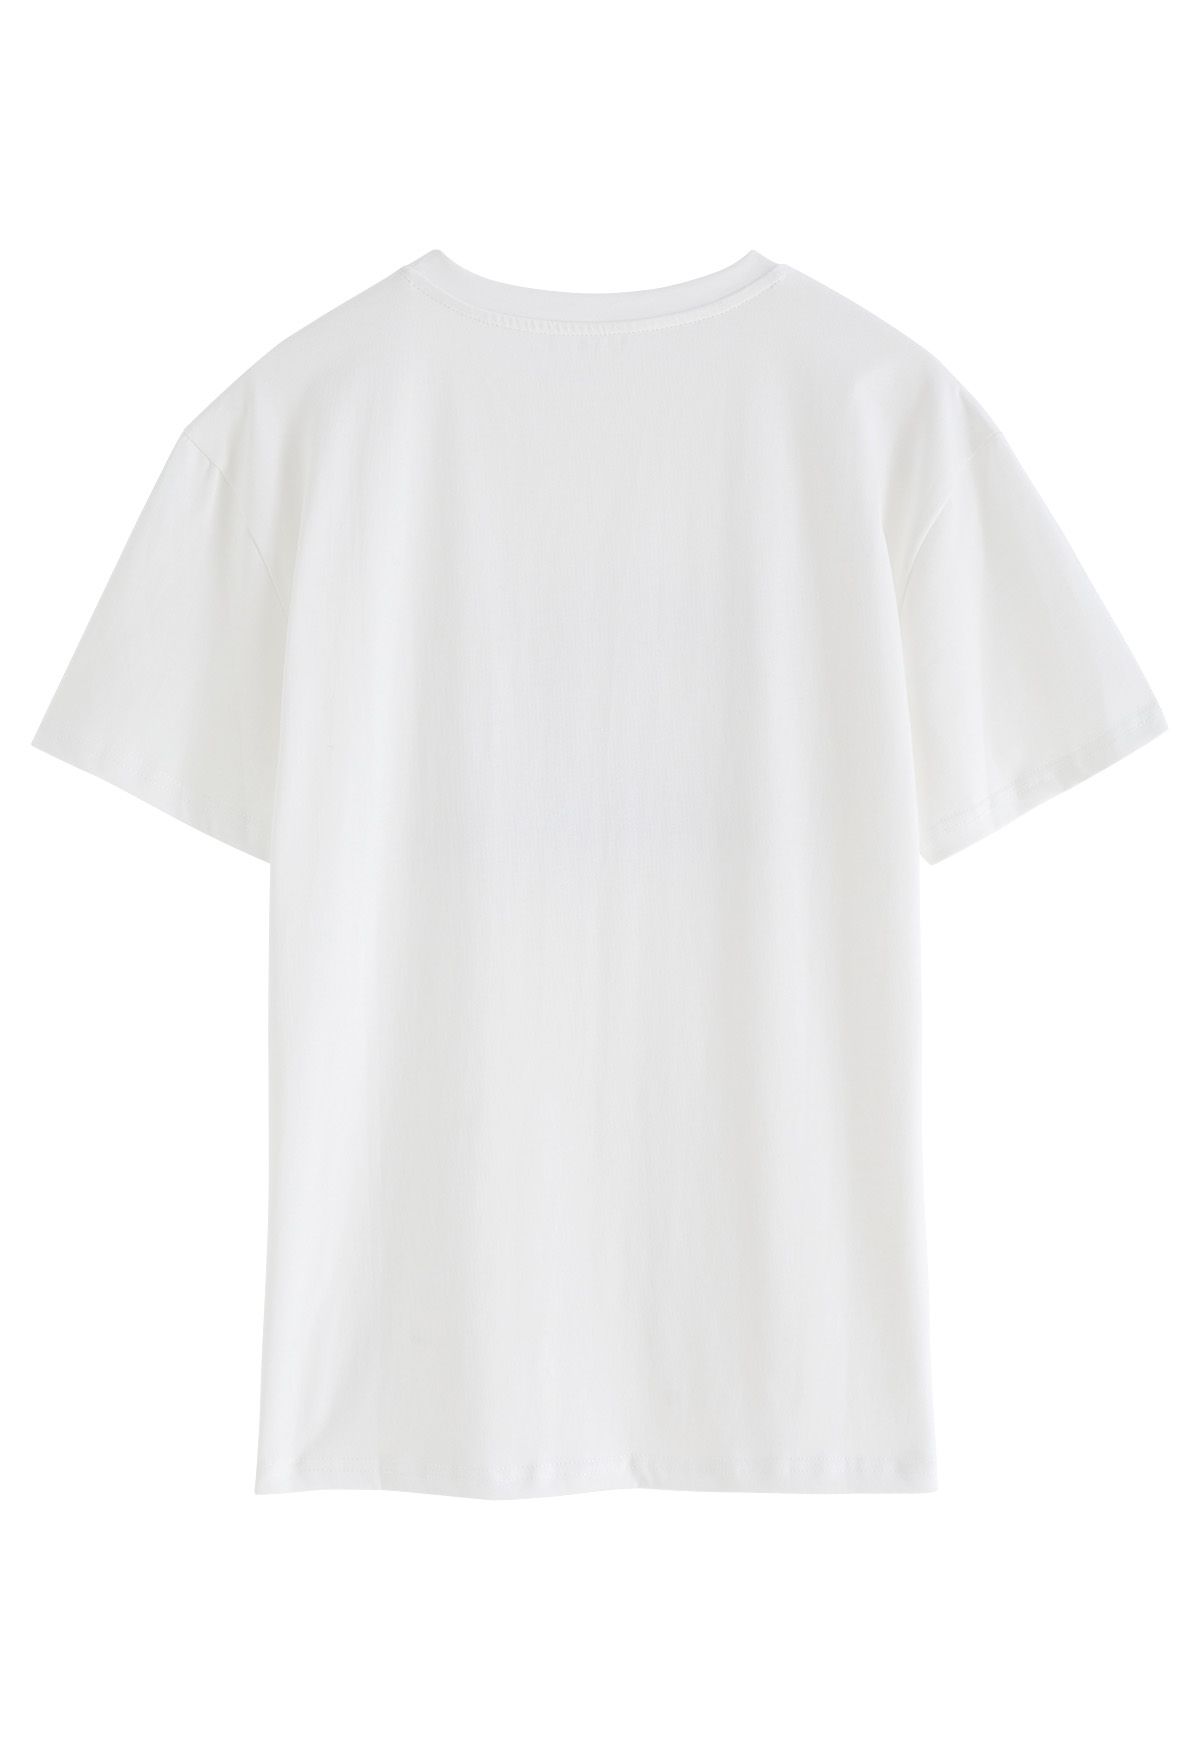 Central Garden T-Shirt mit Rundhalsausschnitt in Weiß